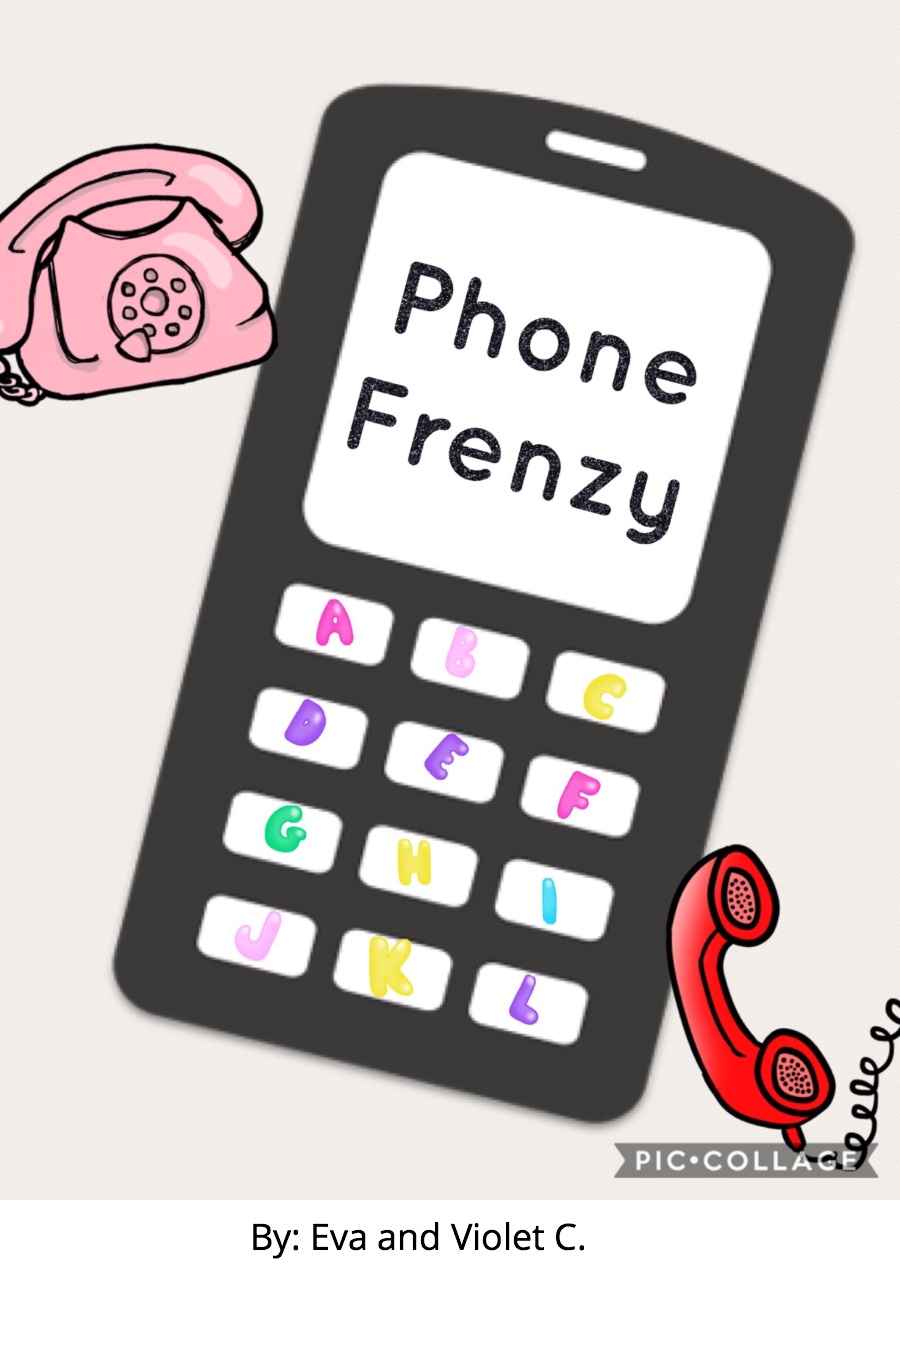 Phone Frenzy